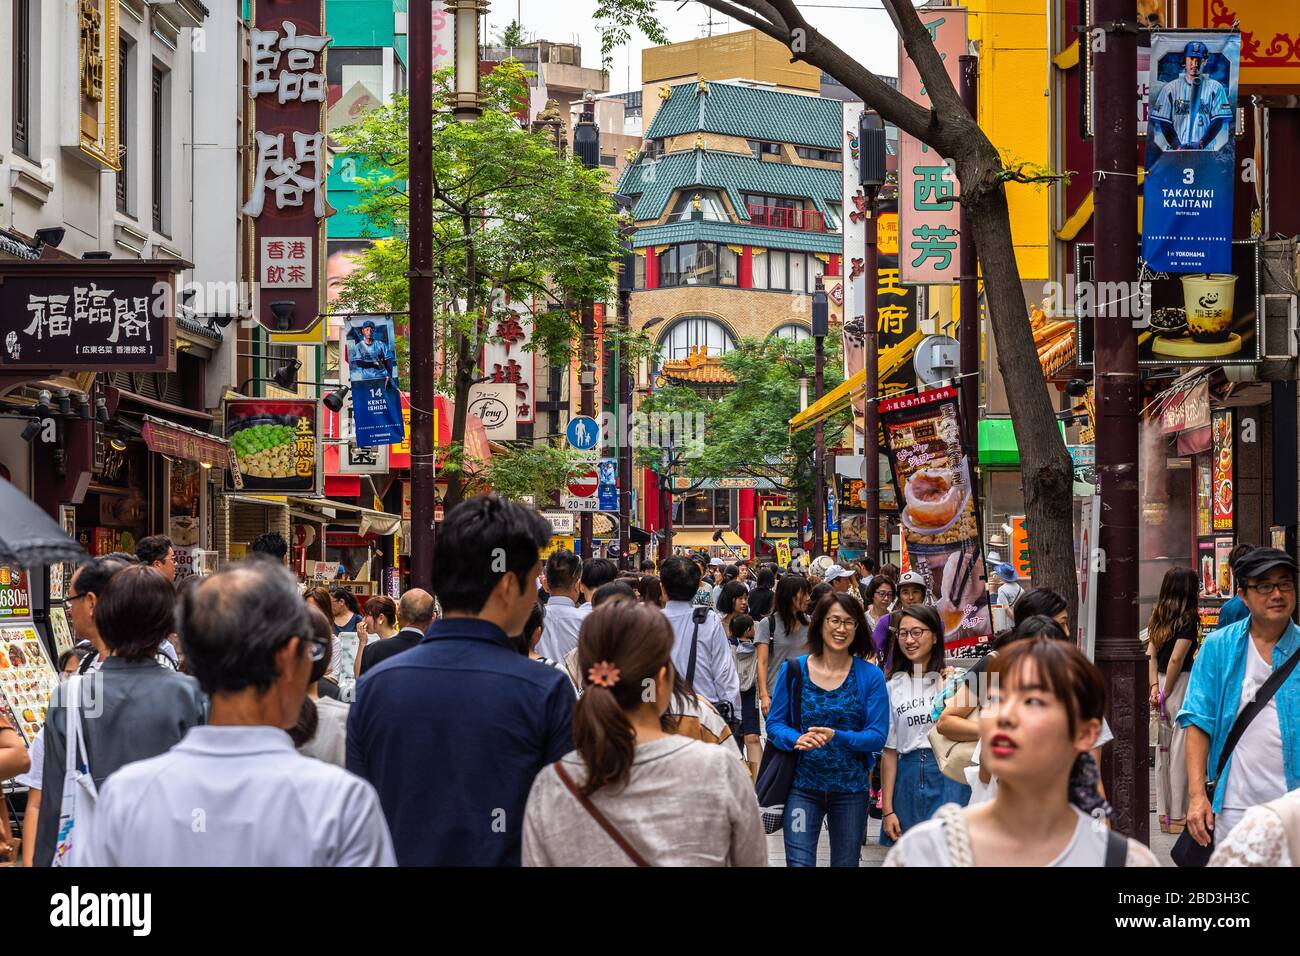 Foule de personnes dans la rue principale du quartier chinois de Yokohama, le plus grand quartier chinois du Japon. Yokohama, Japon, août 2019 Banque D'Images